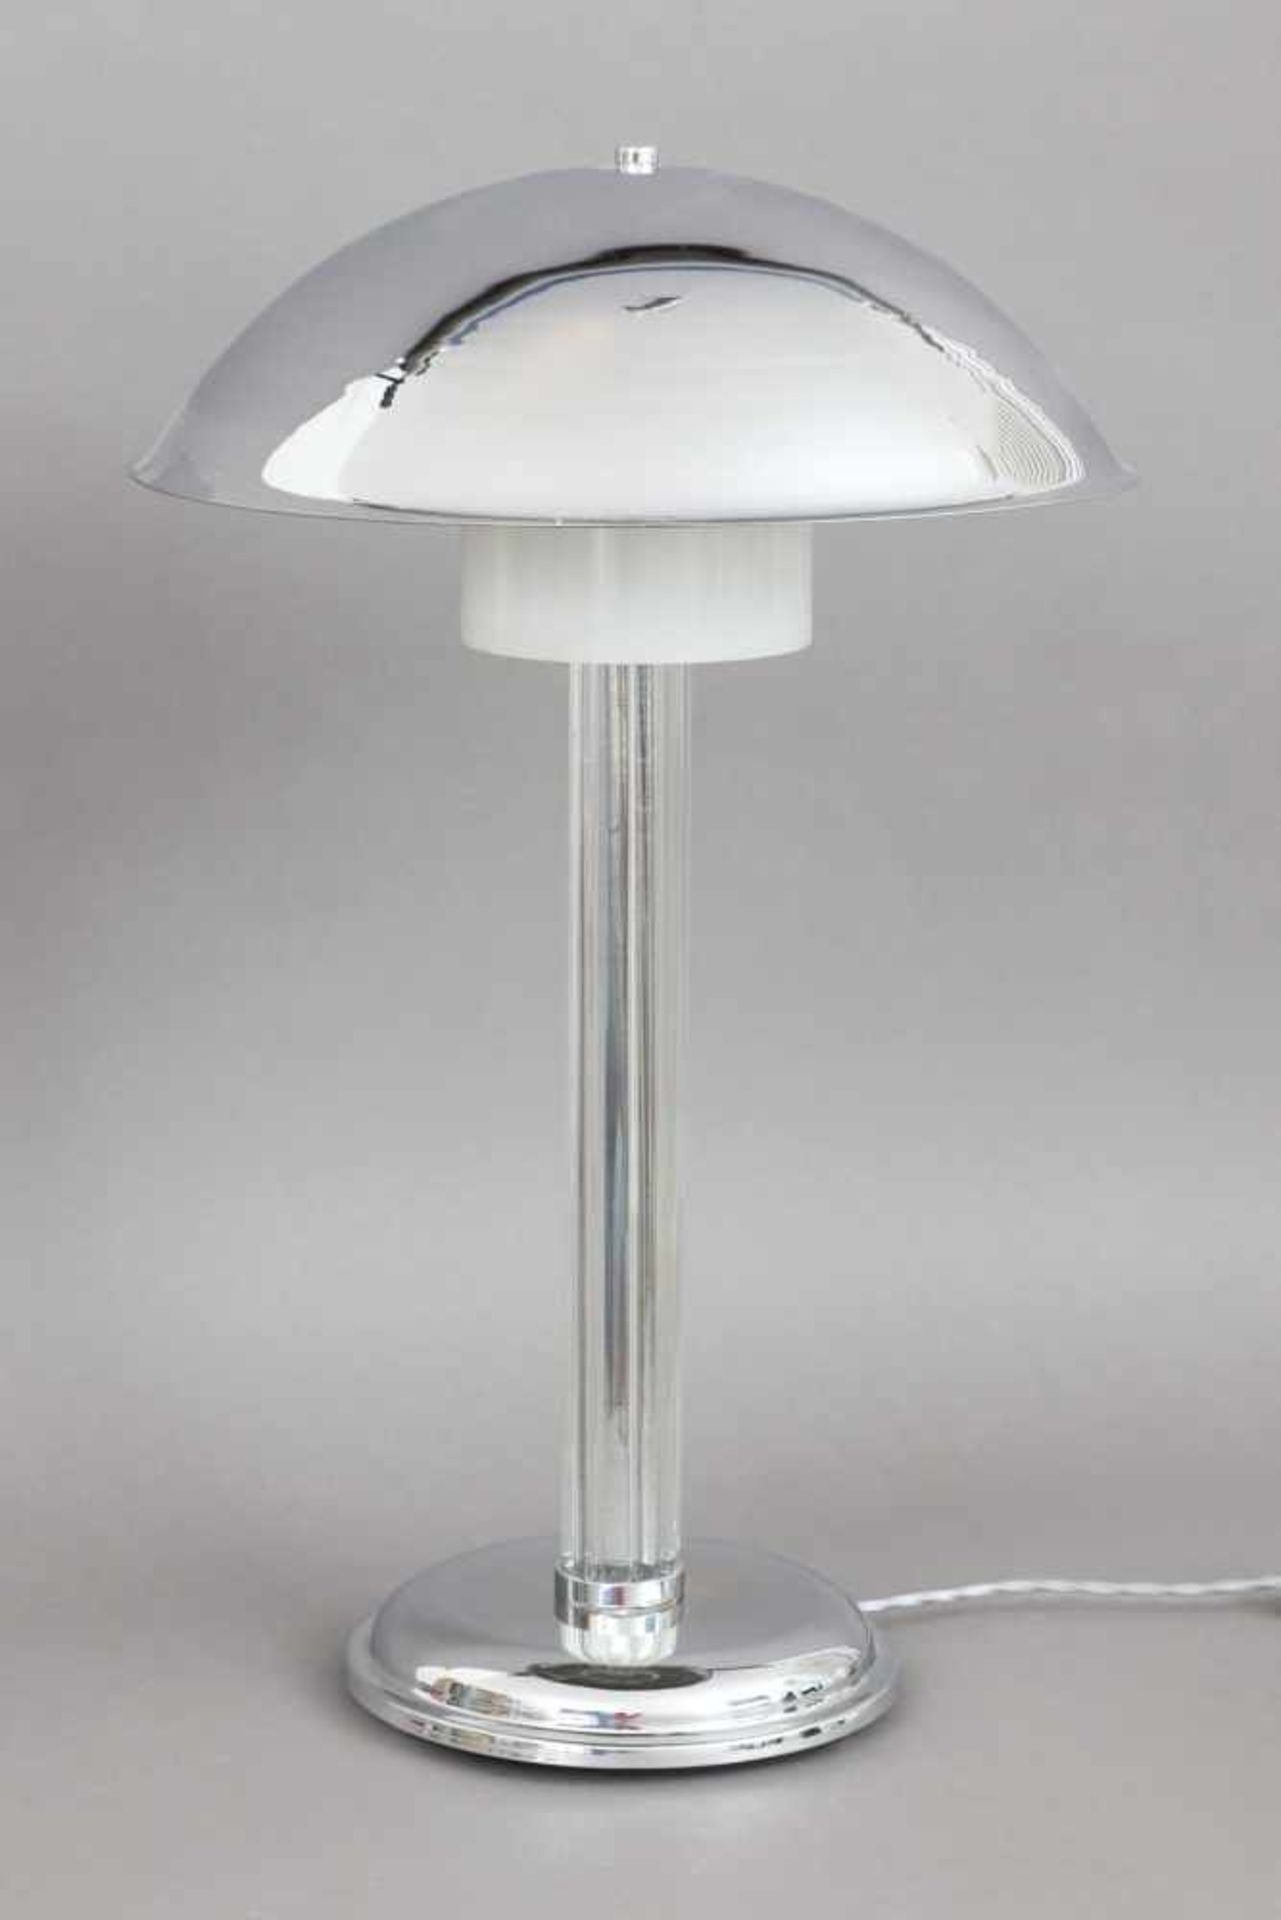 Tischlampe im Stile des Art Deco verchromtes Metall und farbloses Glas, pilzförmiger (Kuppel-)